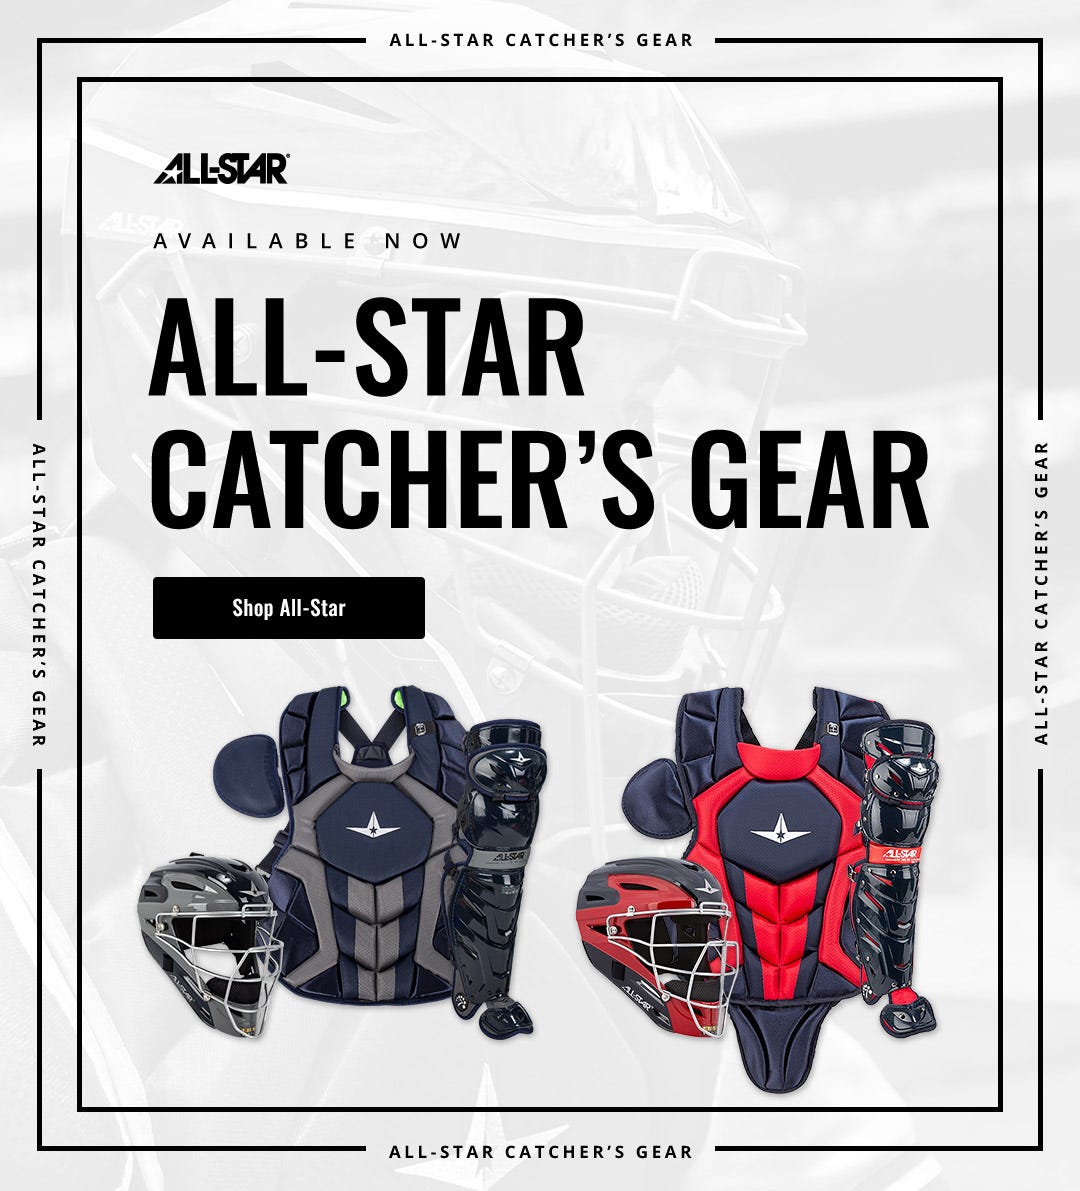 All-Star Catcher's Gear